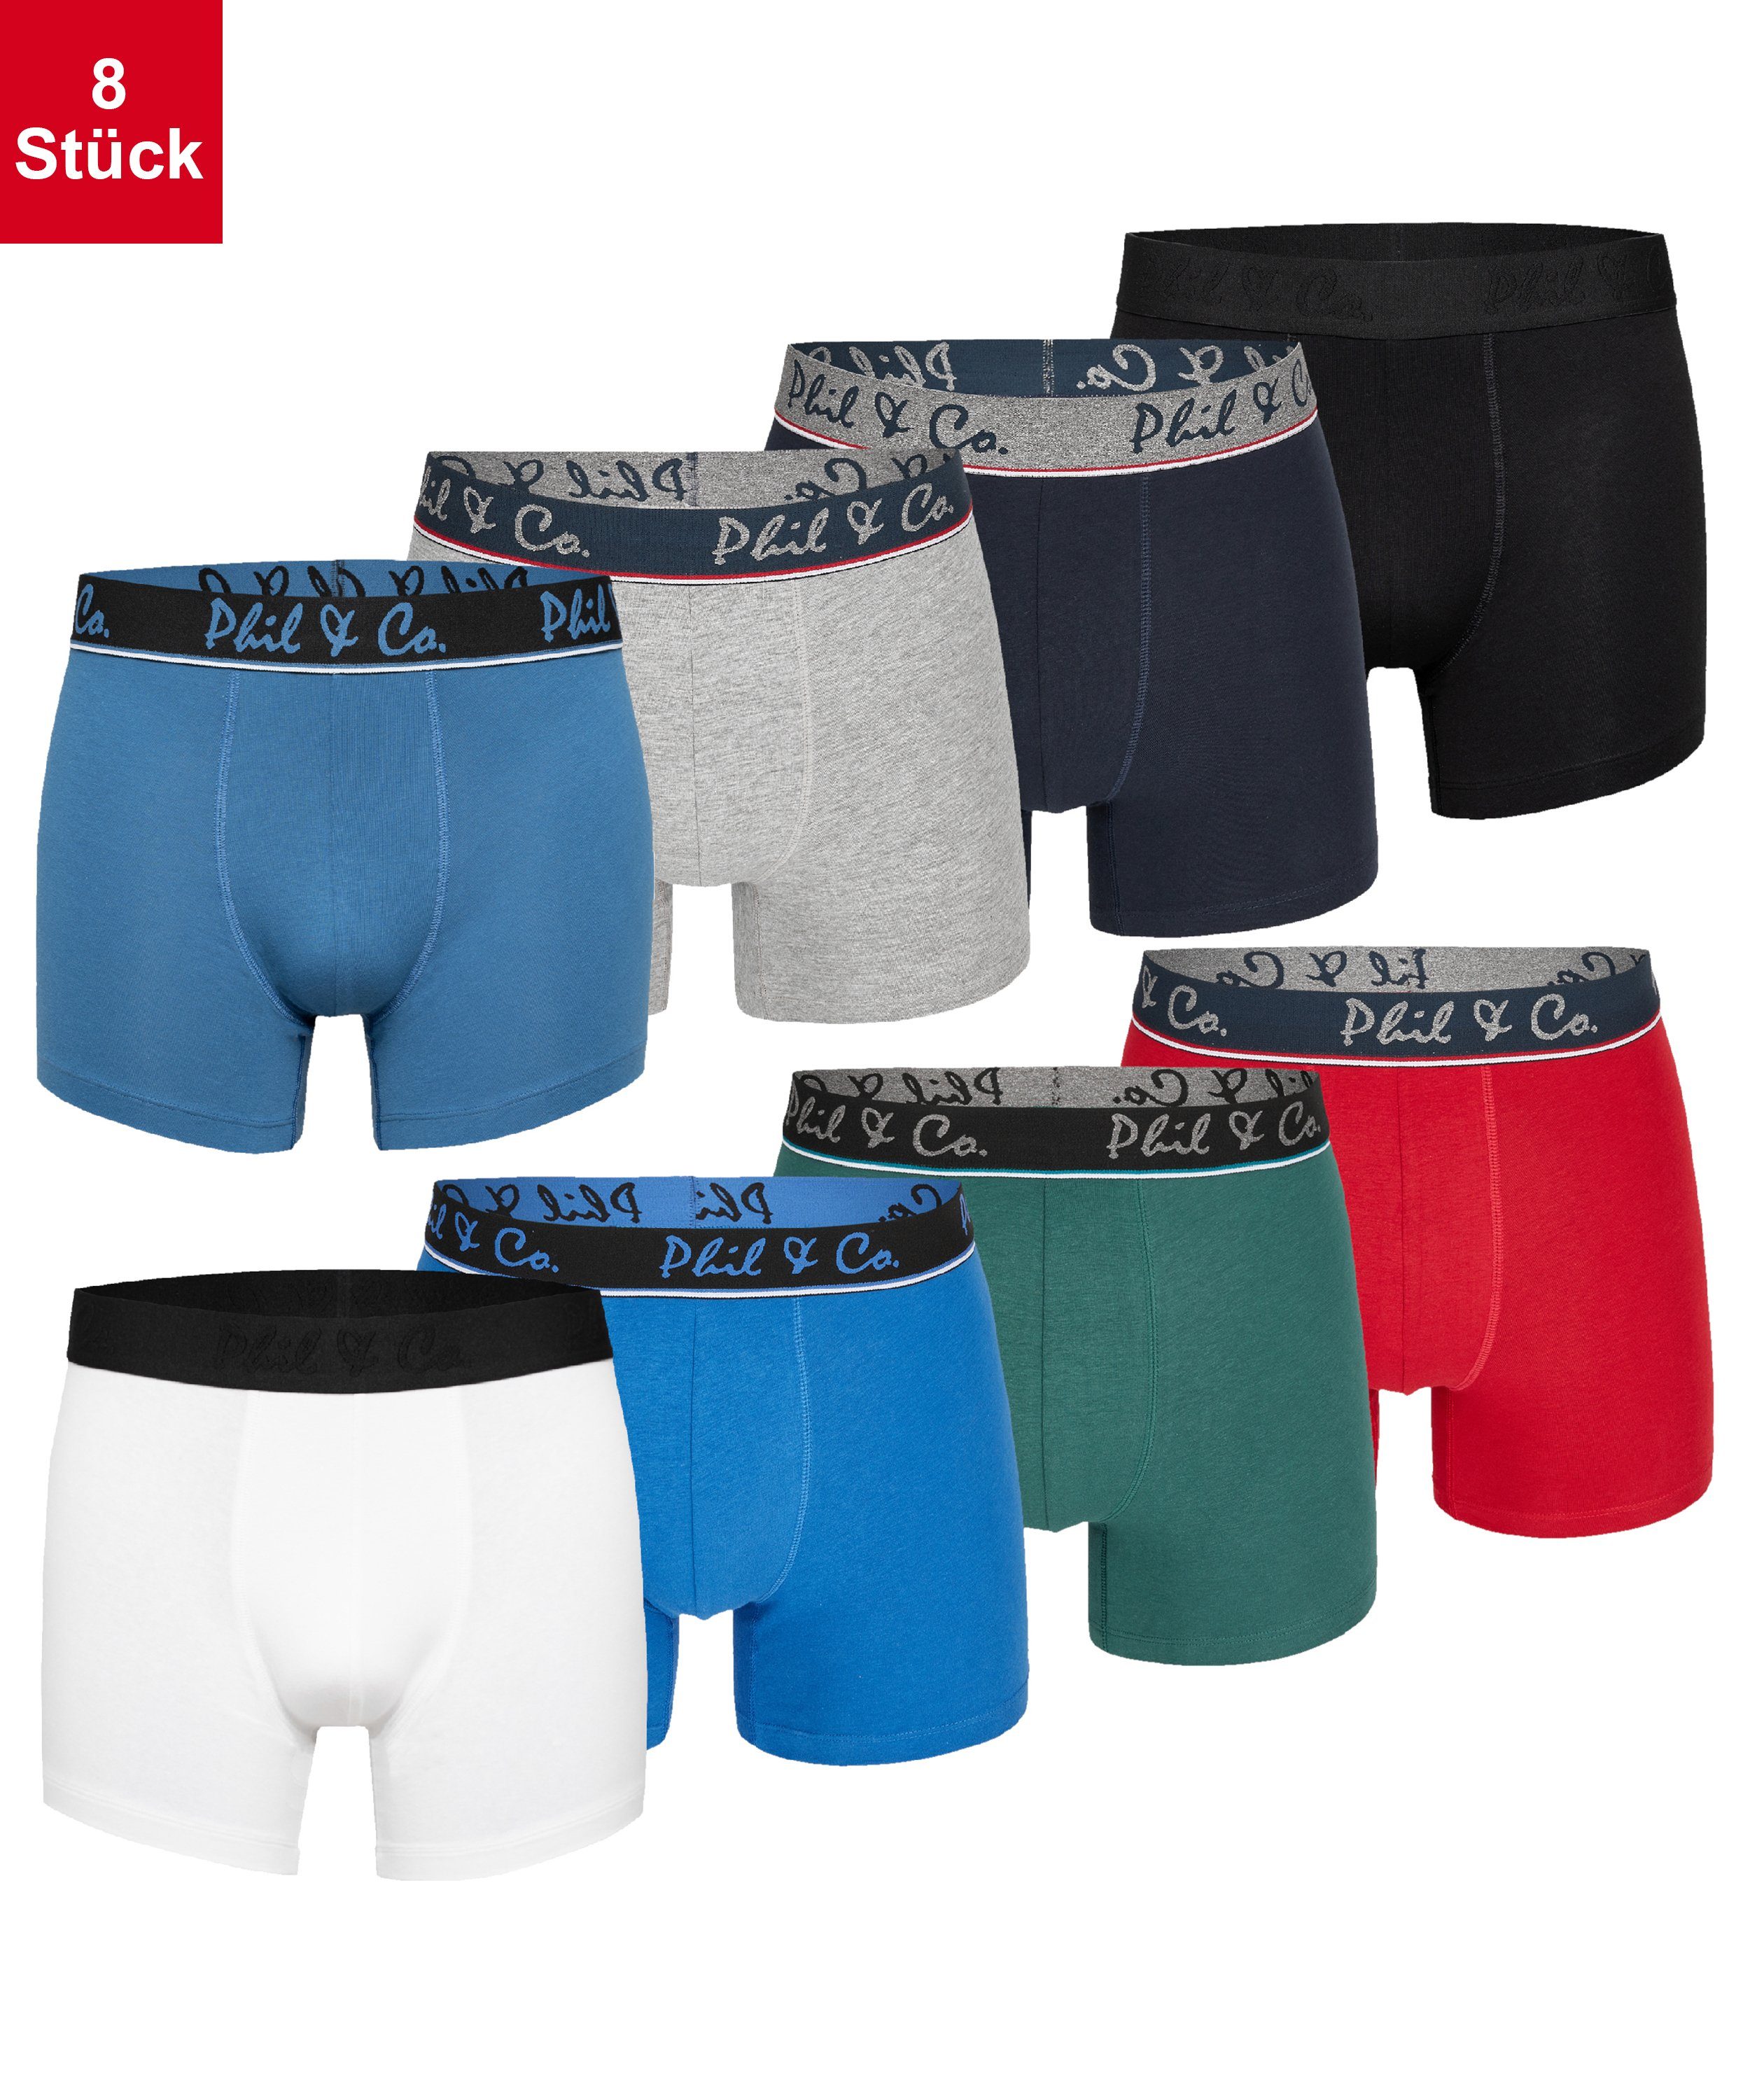 Phil & Co. Retro Pants Herren Männer Boxershorts (8-St) Multicolor 4